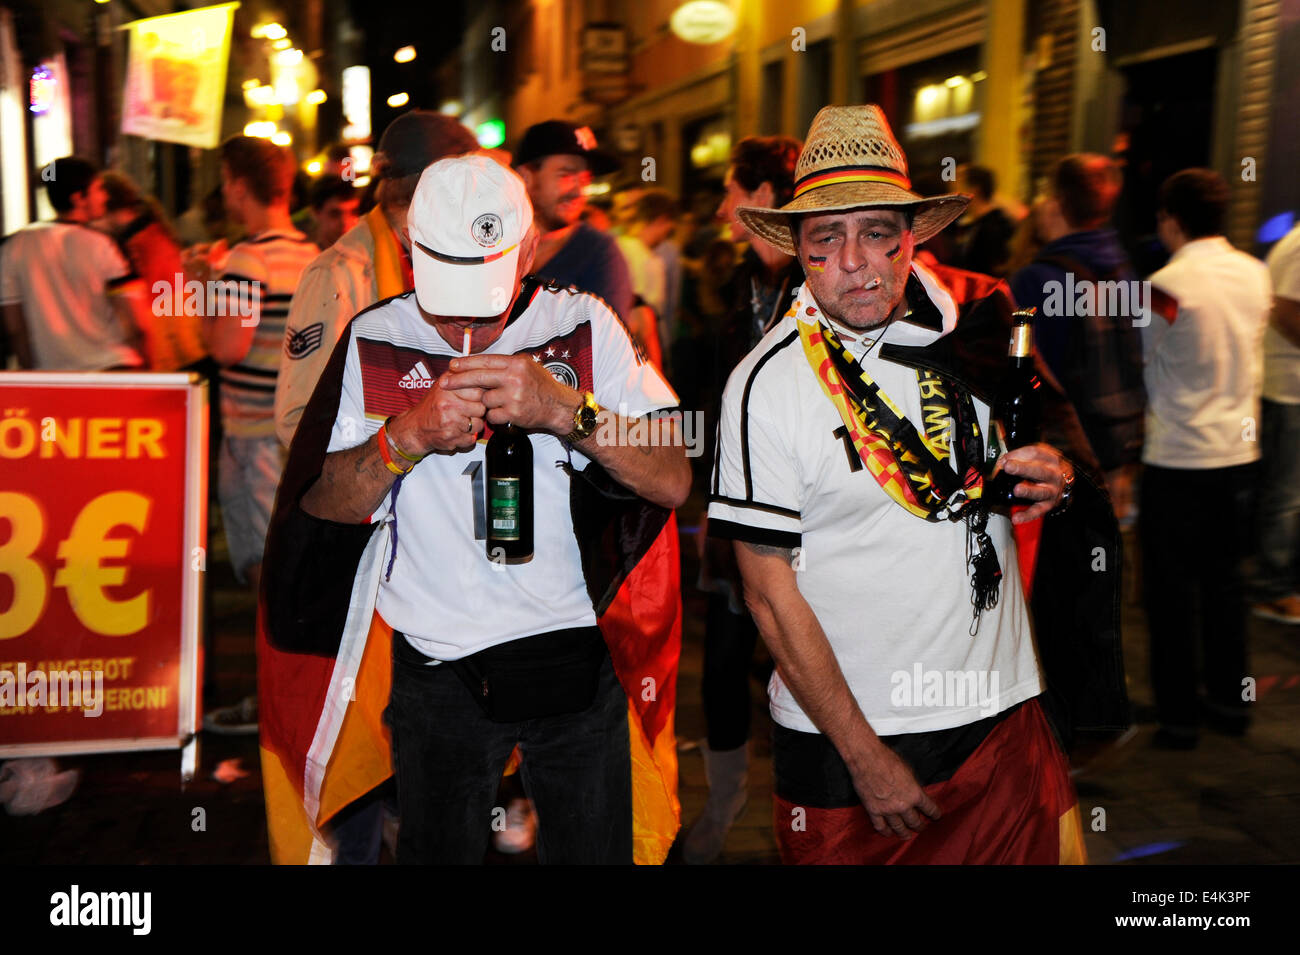 Sfilata di auto e celebrando i fan di Düsseldorf, Germania dopo la finale della Coppa del Mondo in Brasile. Foto Stock